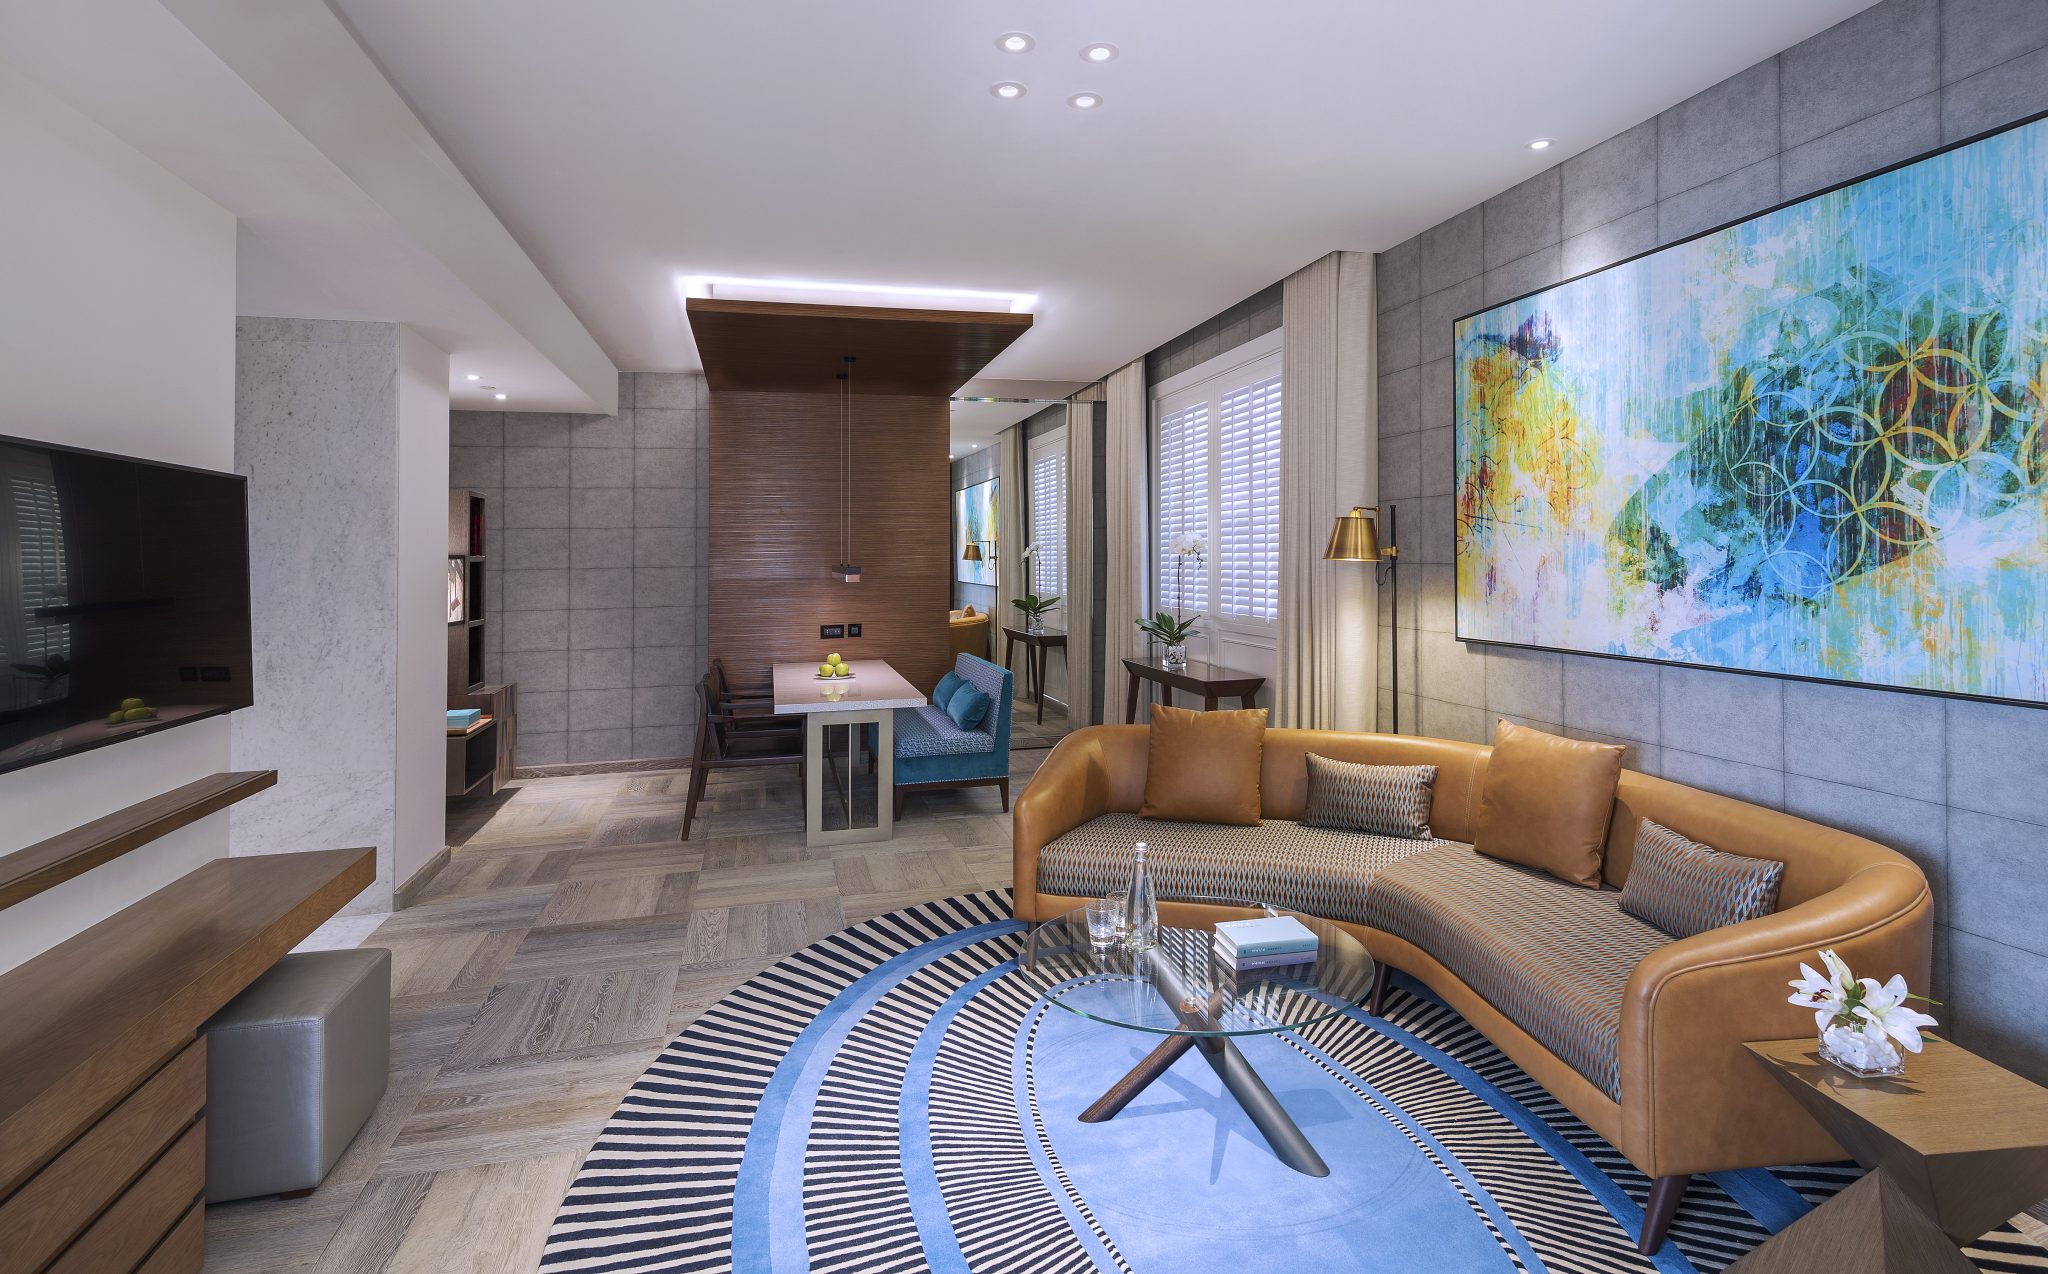 فندق أنداز دبي النخلة يفتتح أبوابه رسمياً في دبي